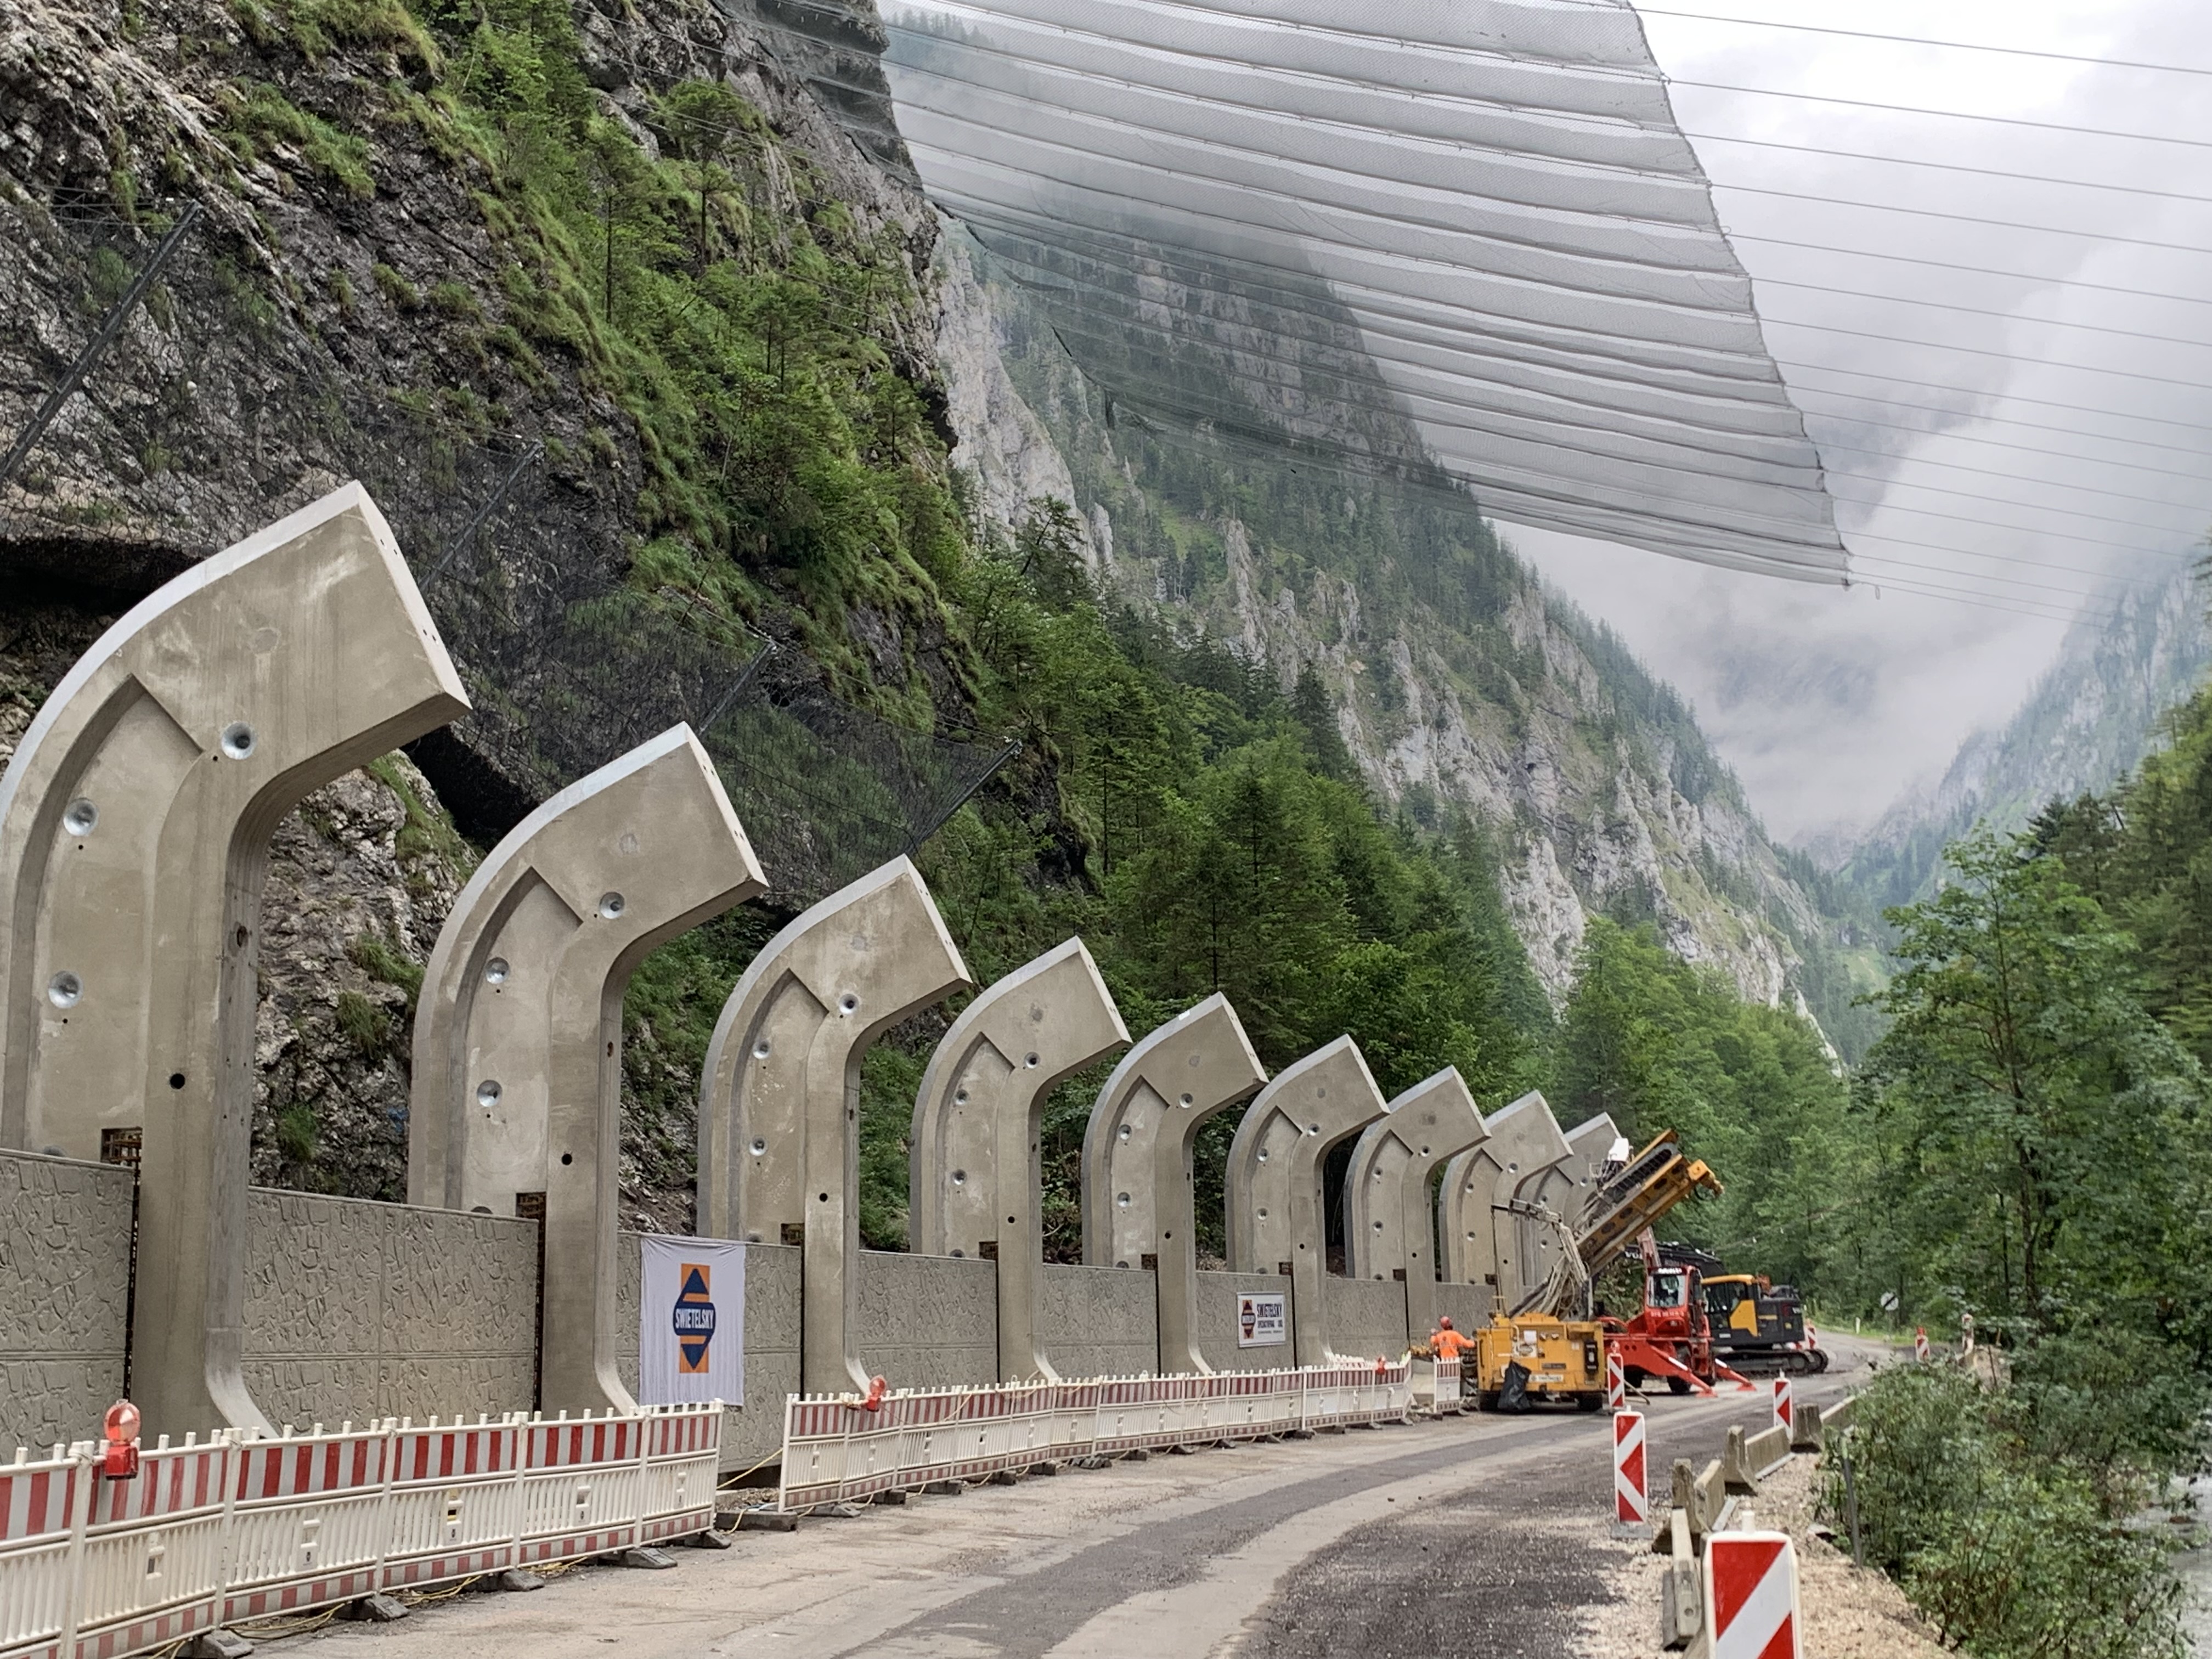 L127 Radmerstraße - Steinerne Jungfrau - Civil engineering